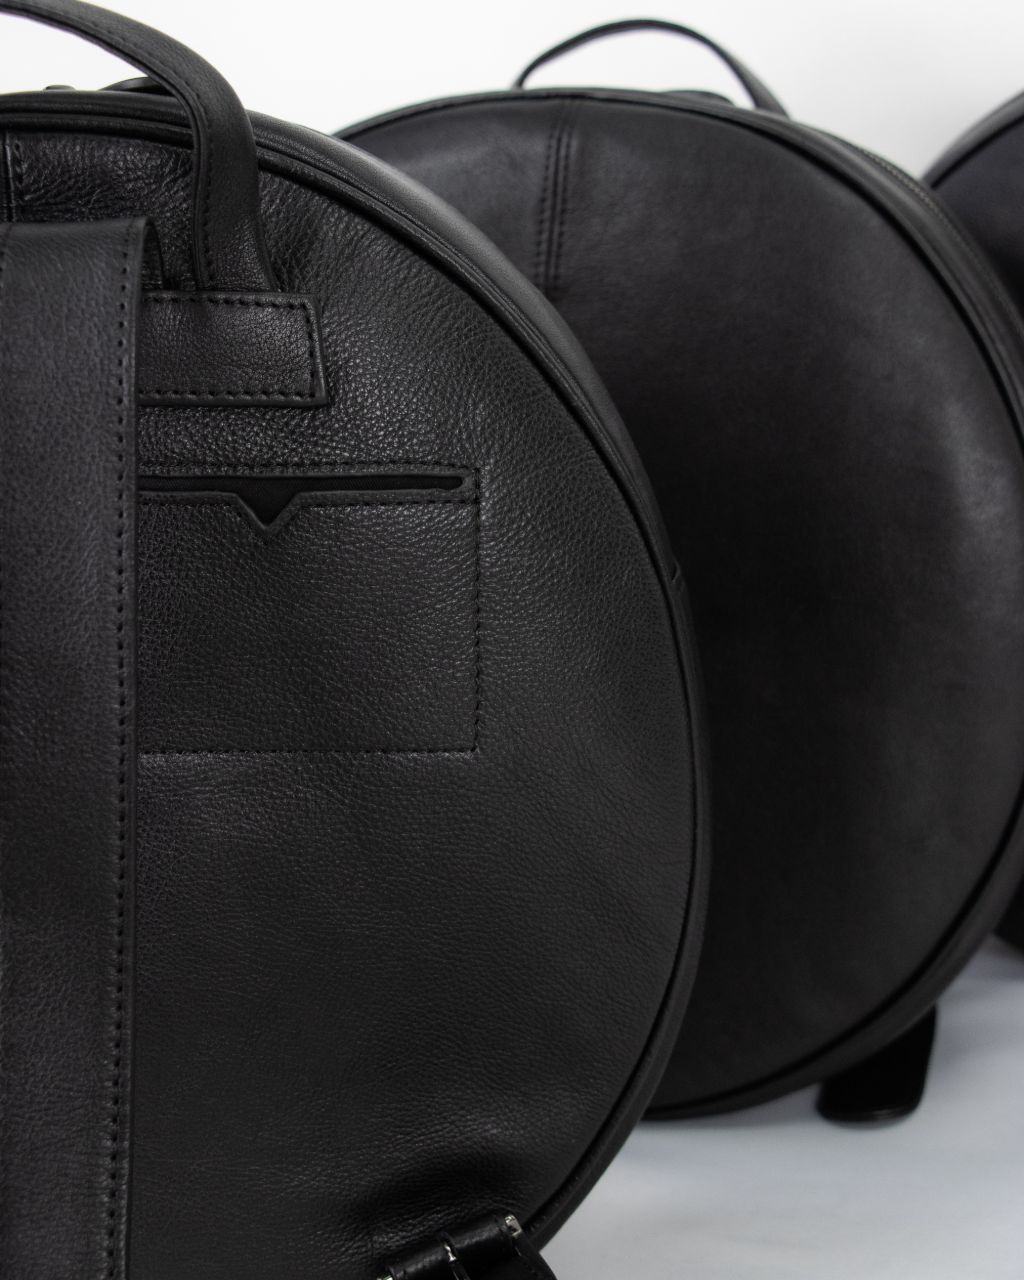 Unique Round Black Leather Backpack Bag - Black